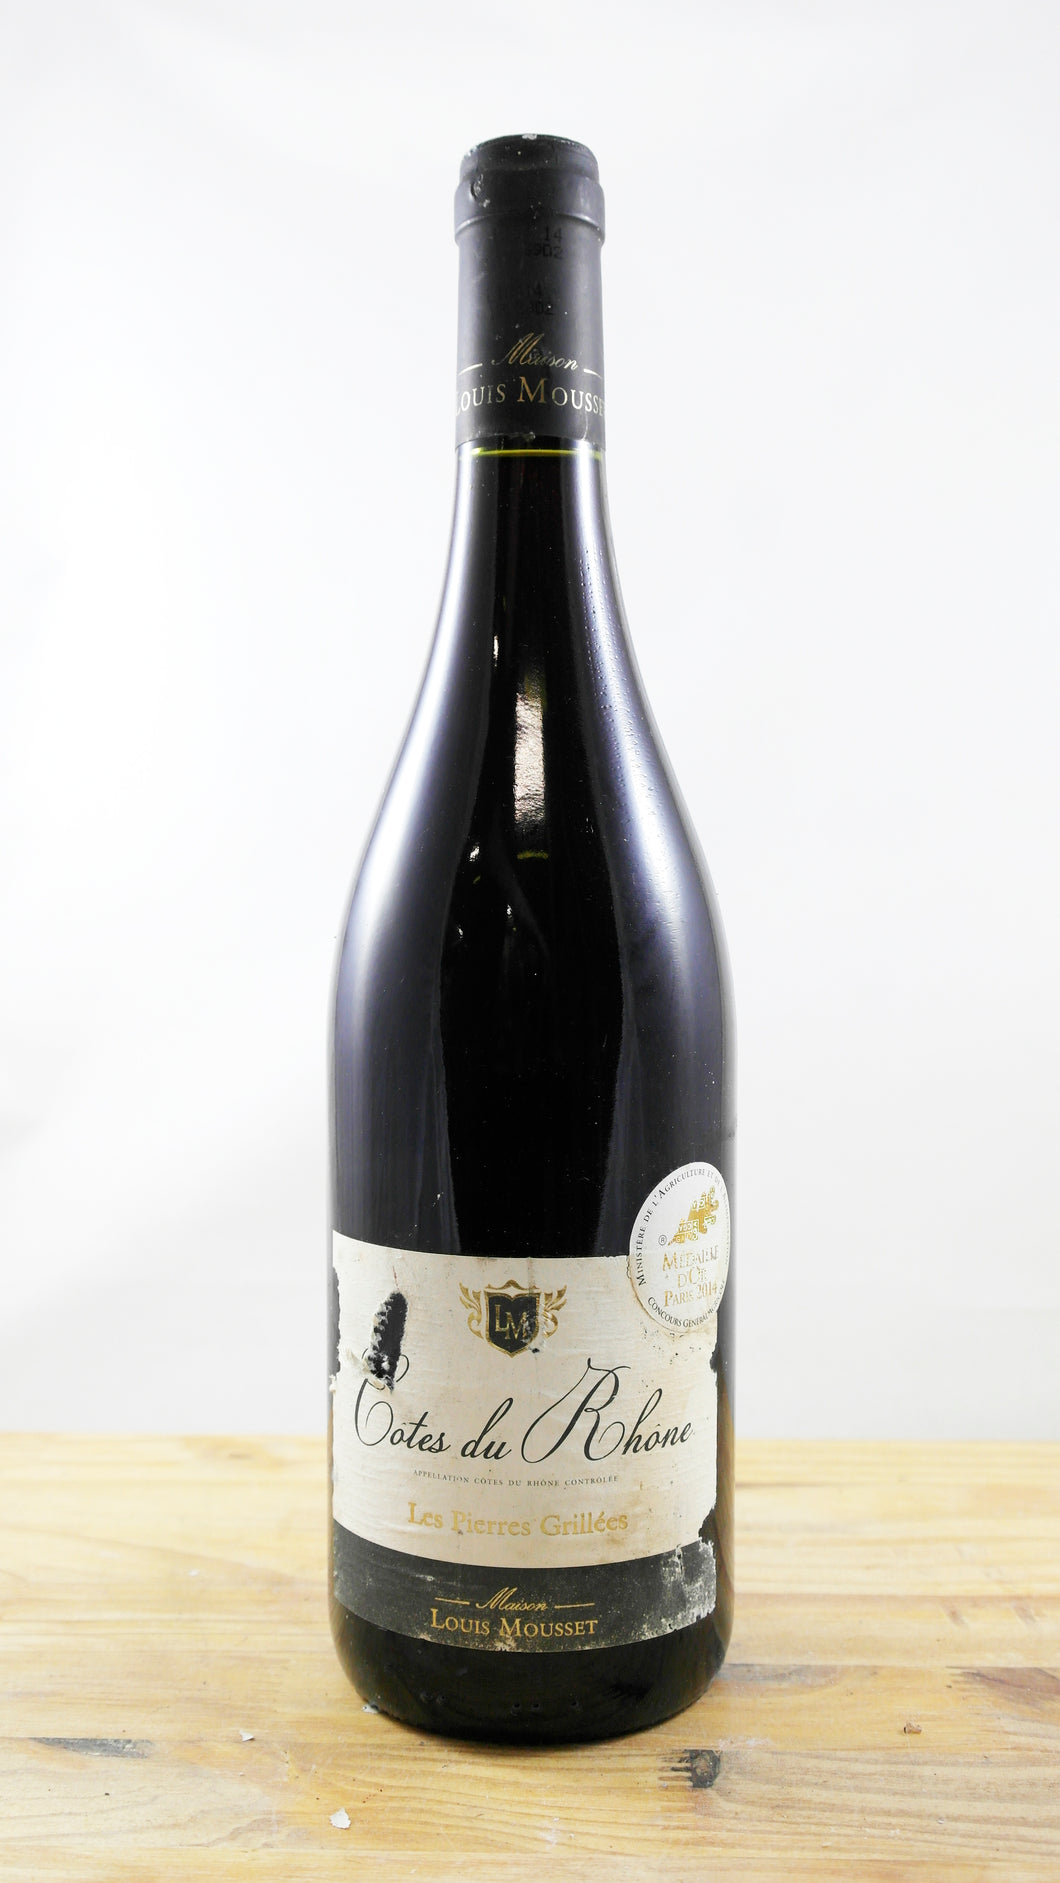 Vin Année 2013 Côtes du Rhône Les Pierres Grillées